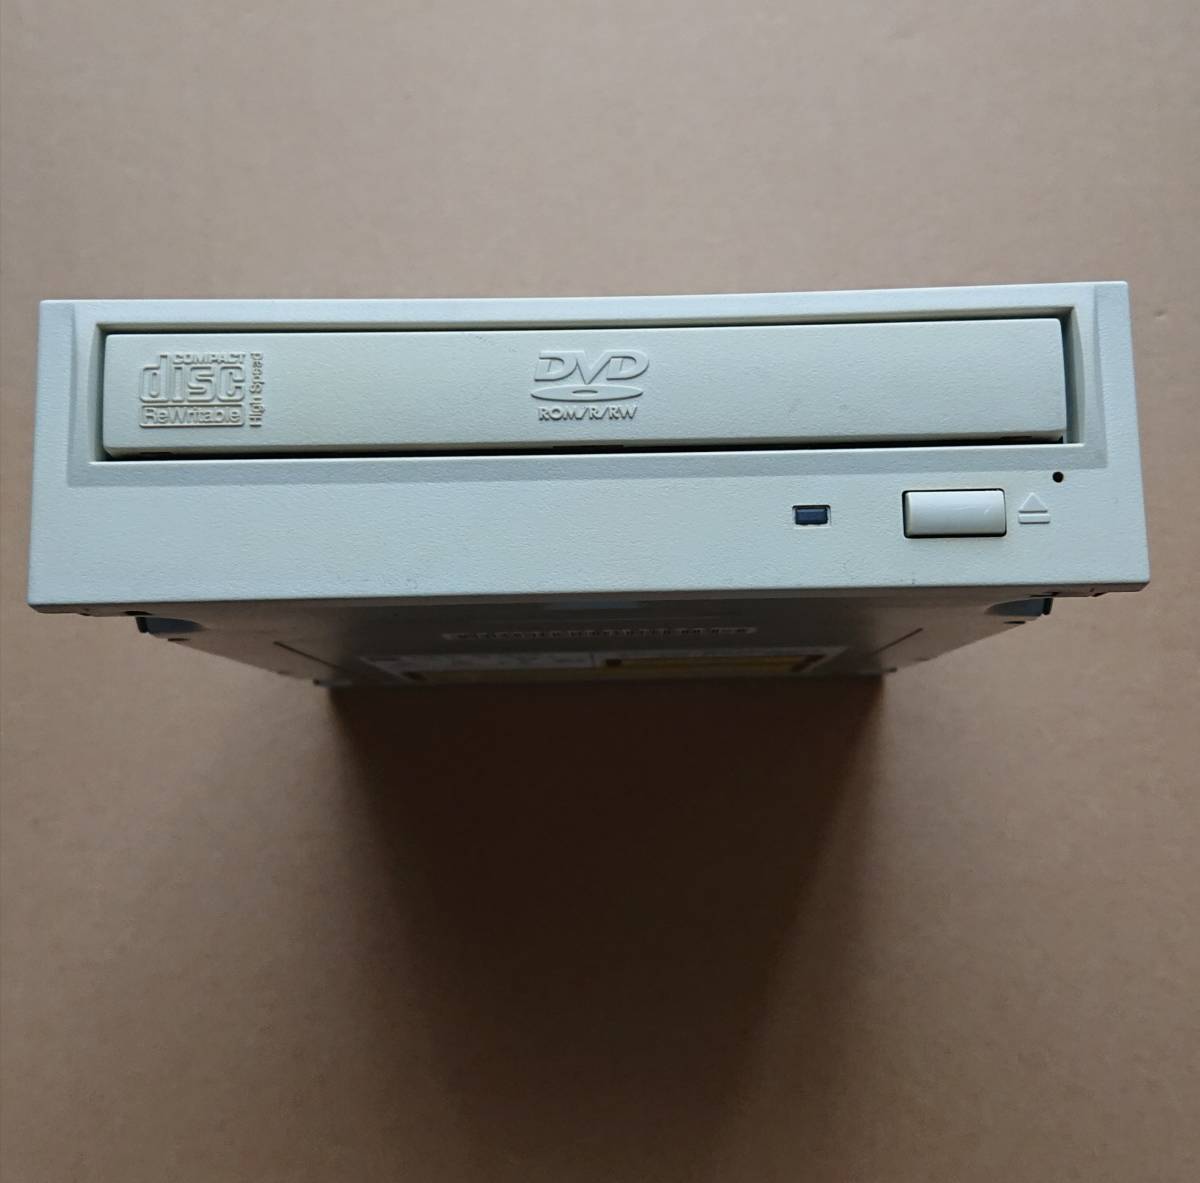 松下電器産業 DVD-SuperMULTIドライブ(内蔵、ATAPI、5倍速) LF-M821JD